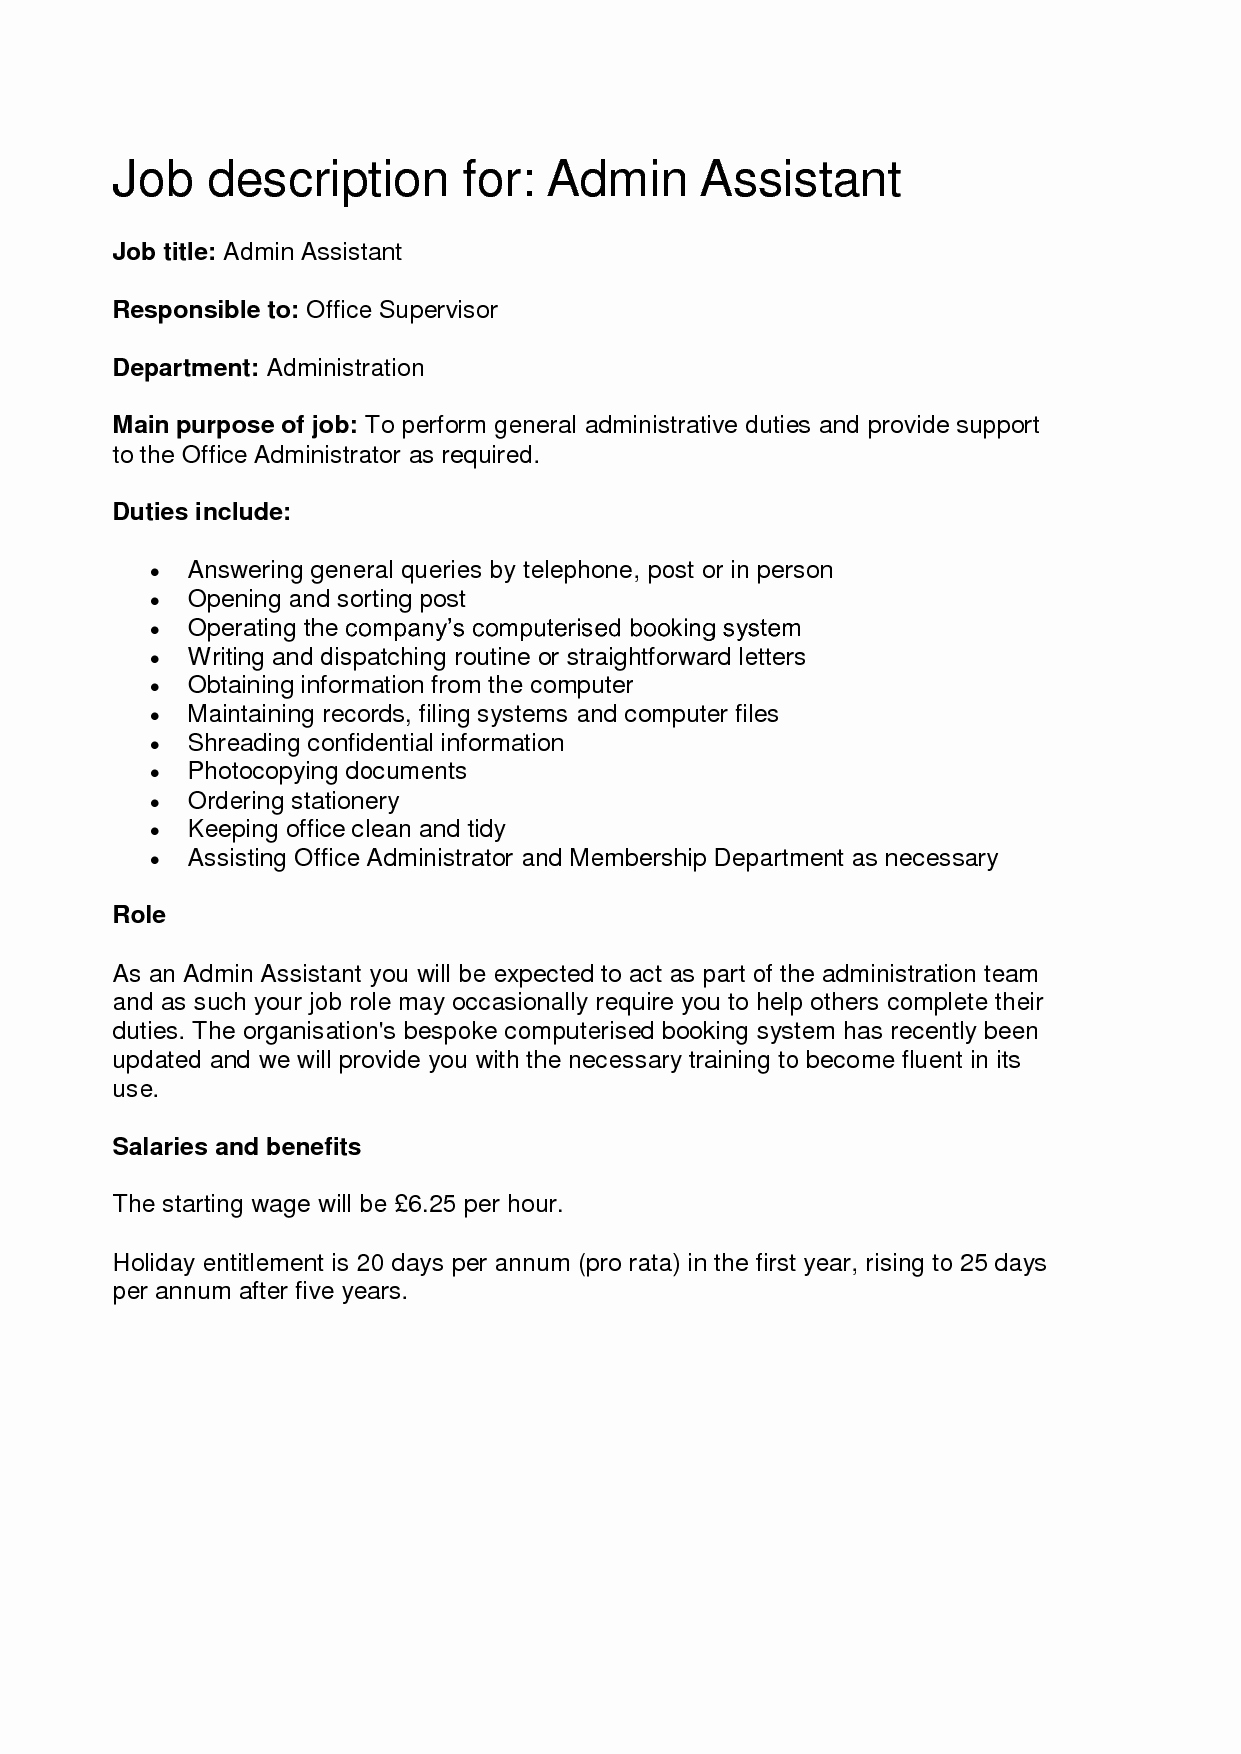 Administrative assistant Job Description Sample